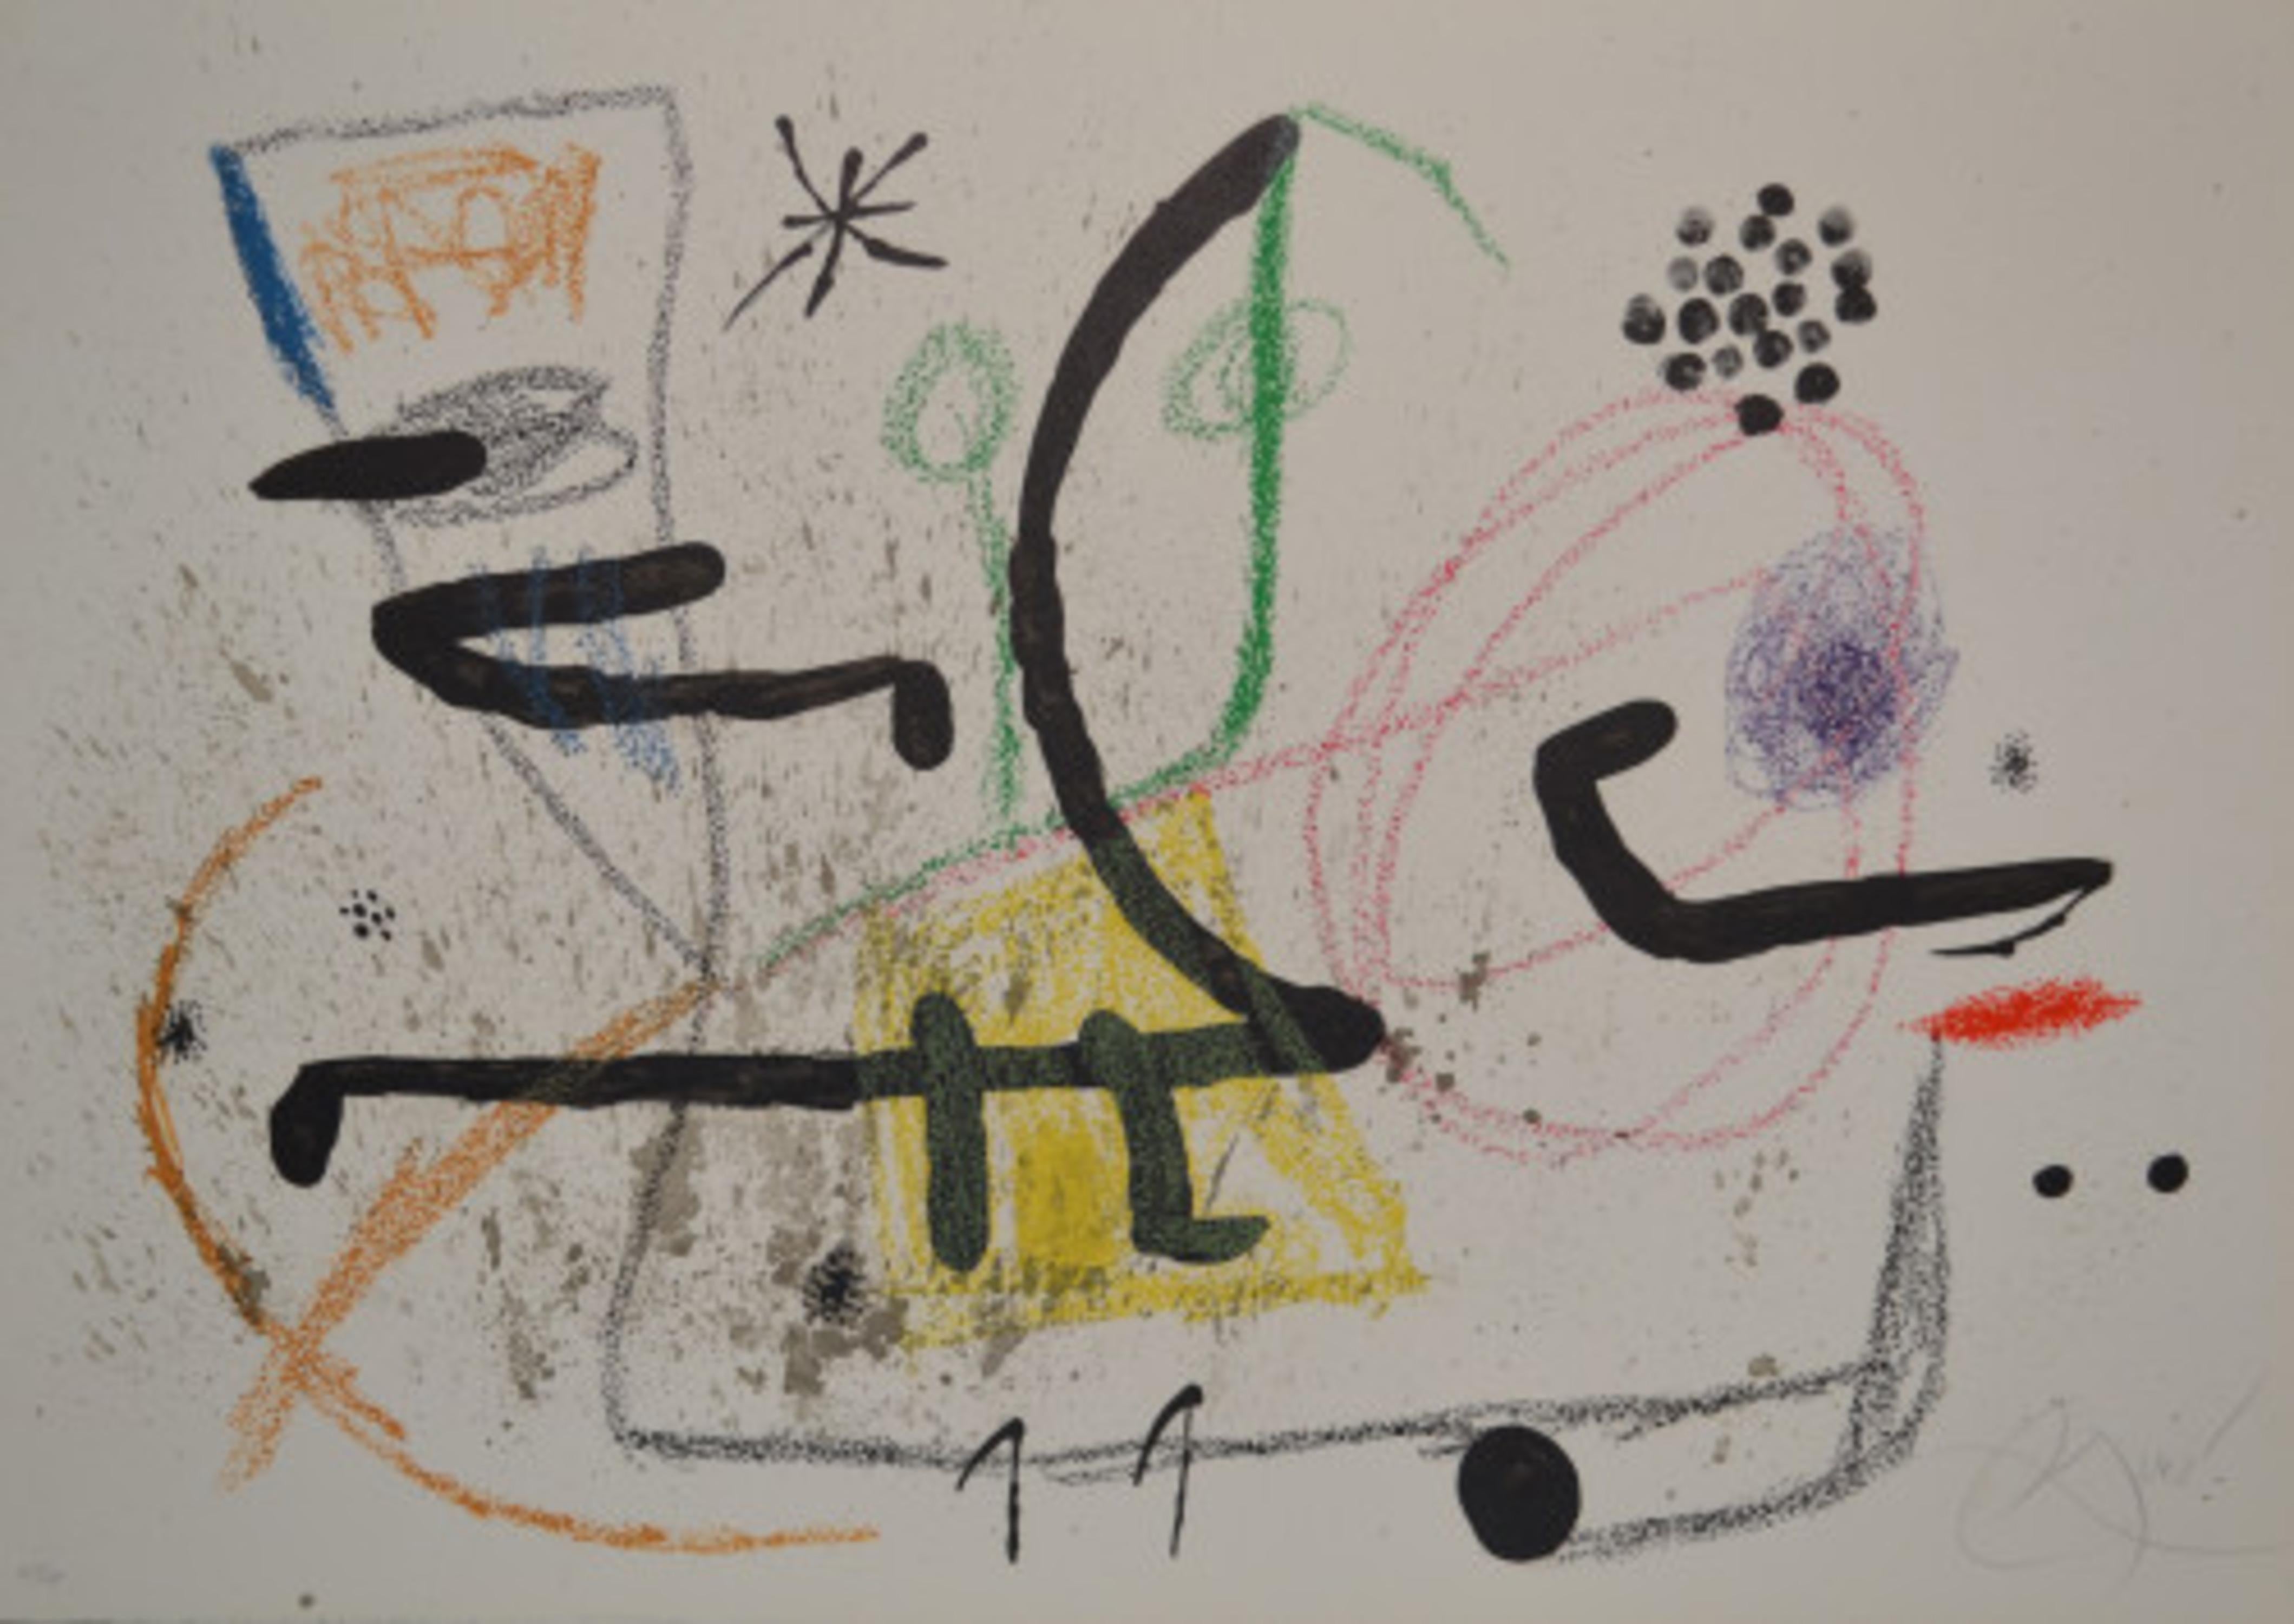 Maravillas - M1061 - Print by Joan Miró